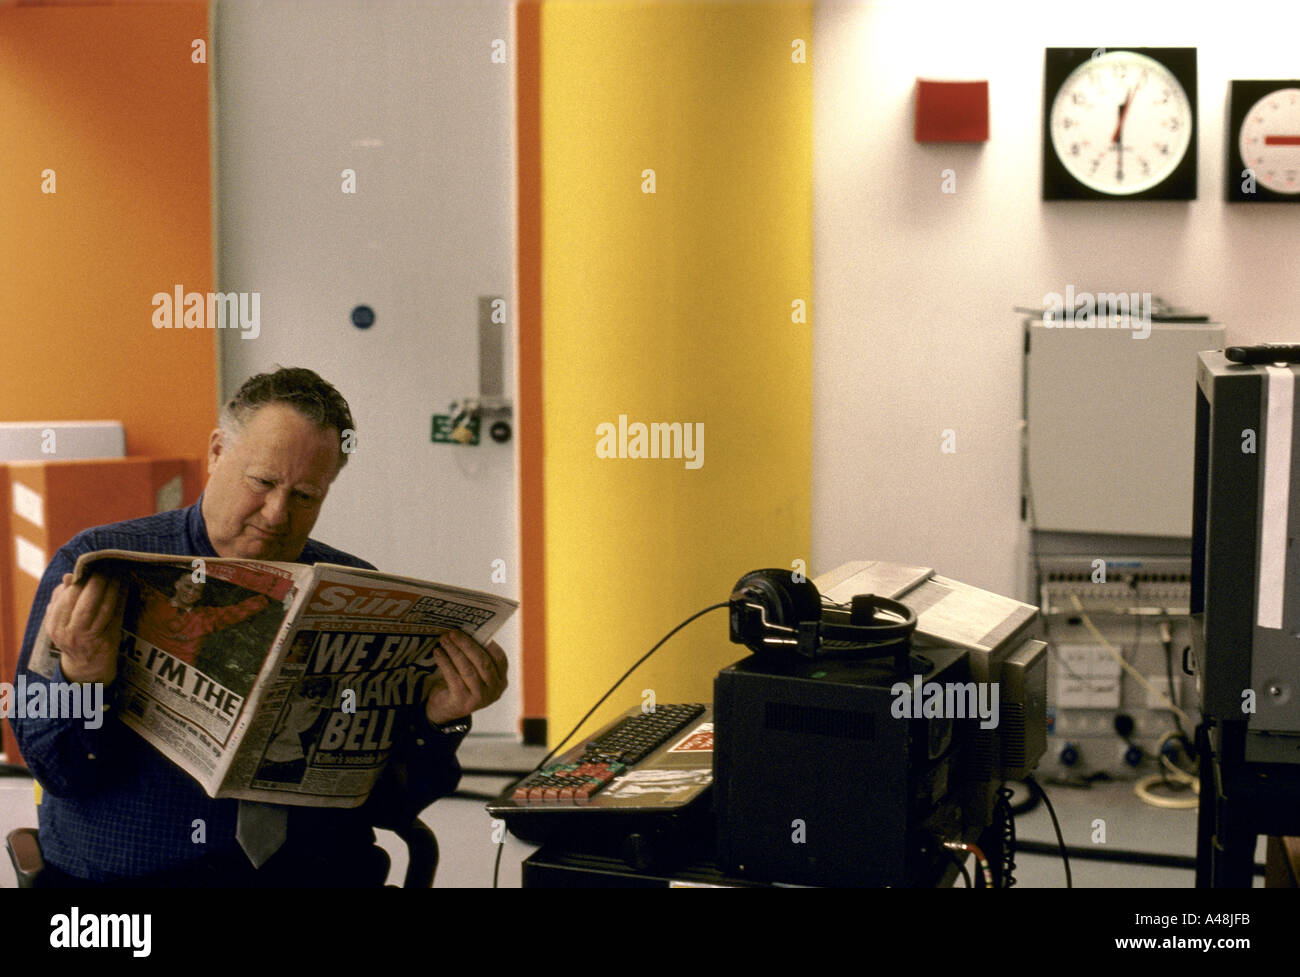 Mary Bell Media Kontroverse Kanal 5 tv Nachrichten Studios Kameramann liest, dass die Sonne-Papier, das offenbart Verbleib 1998 Glocken Stockfoto